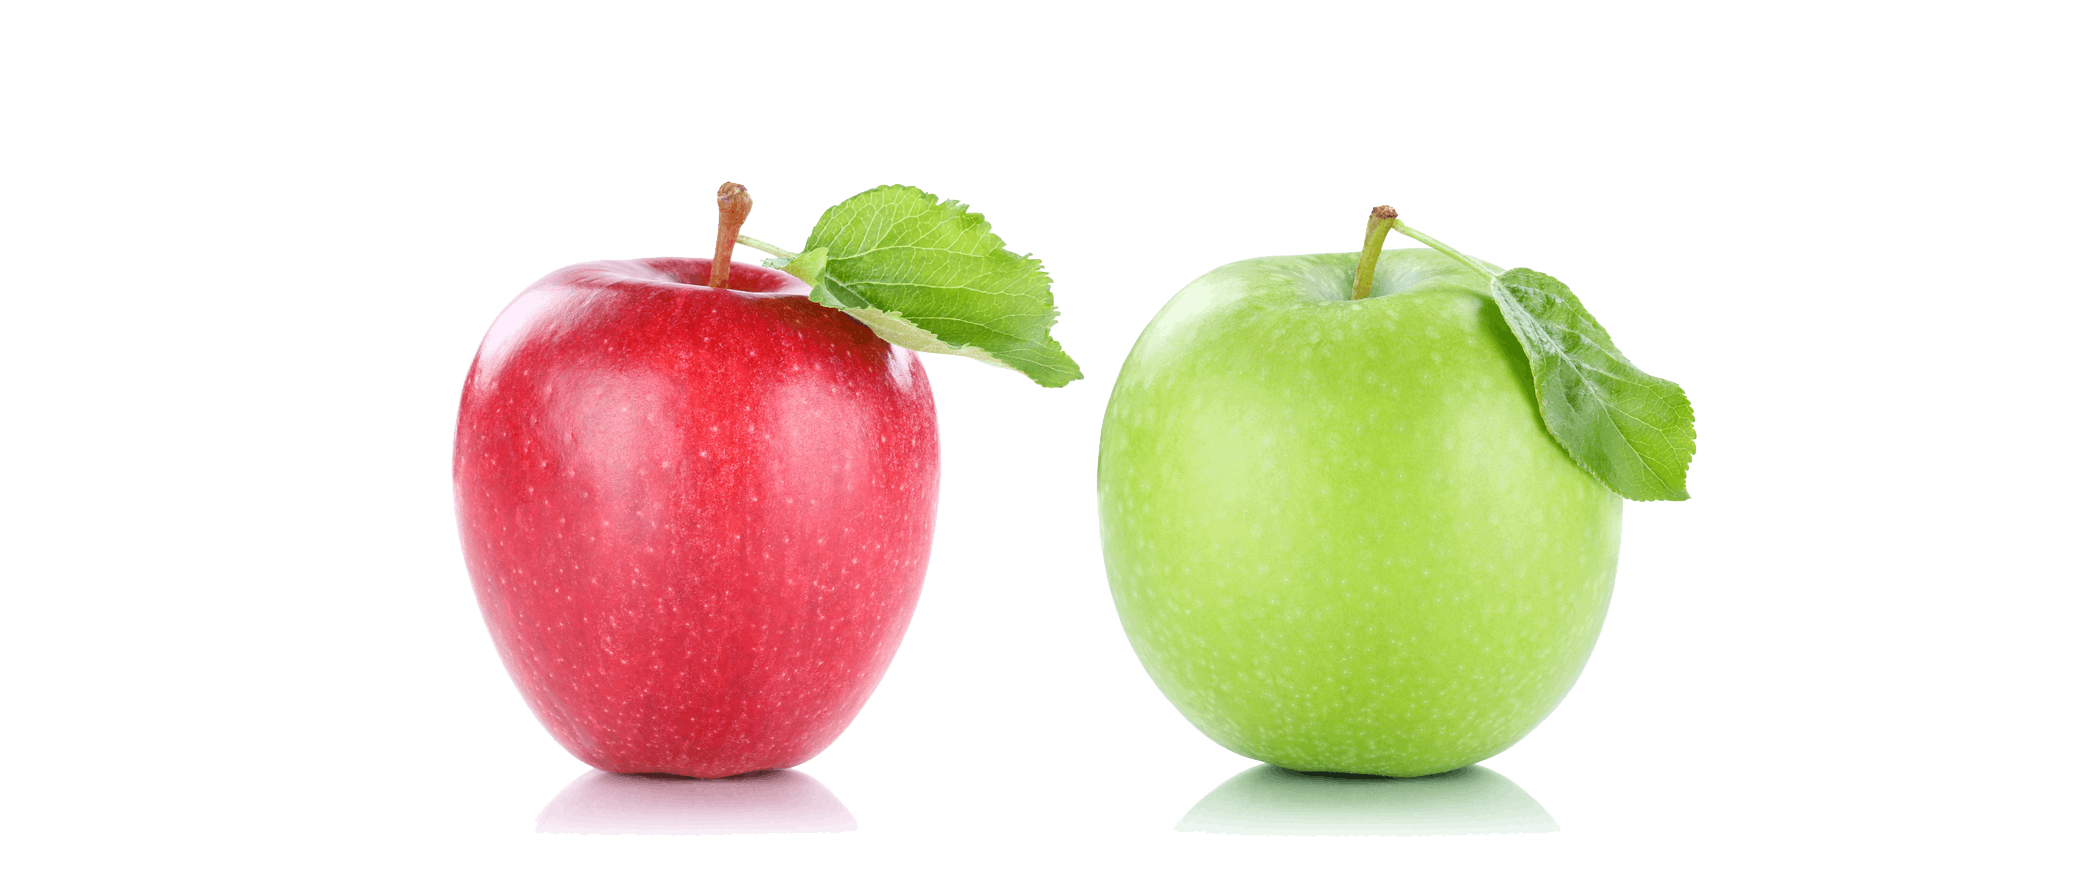 Håller ett äpple om dagen doktorn borta? | Iform.se